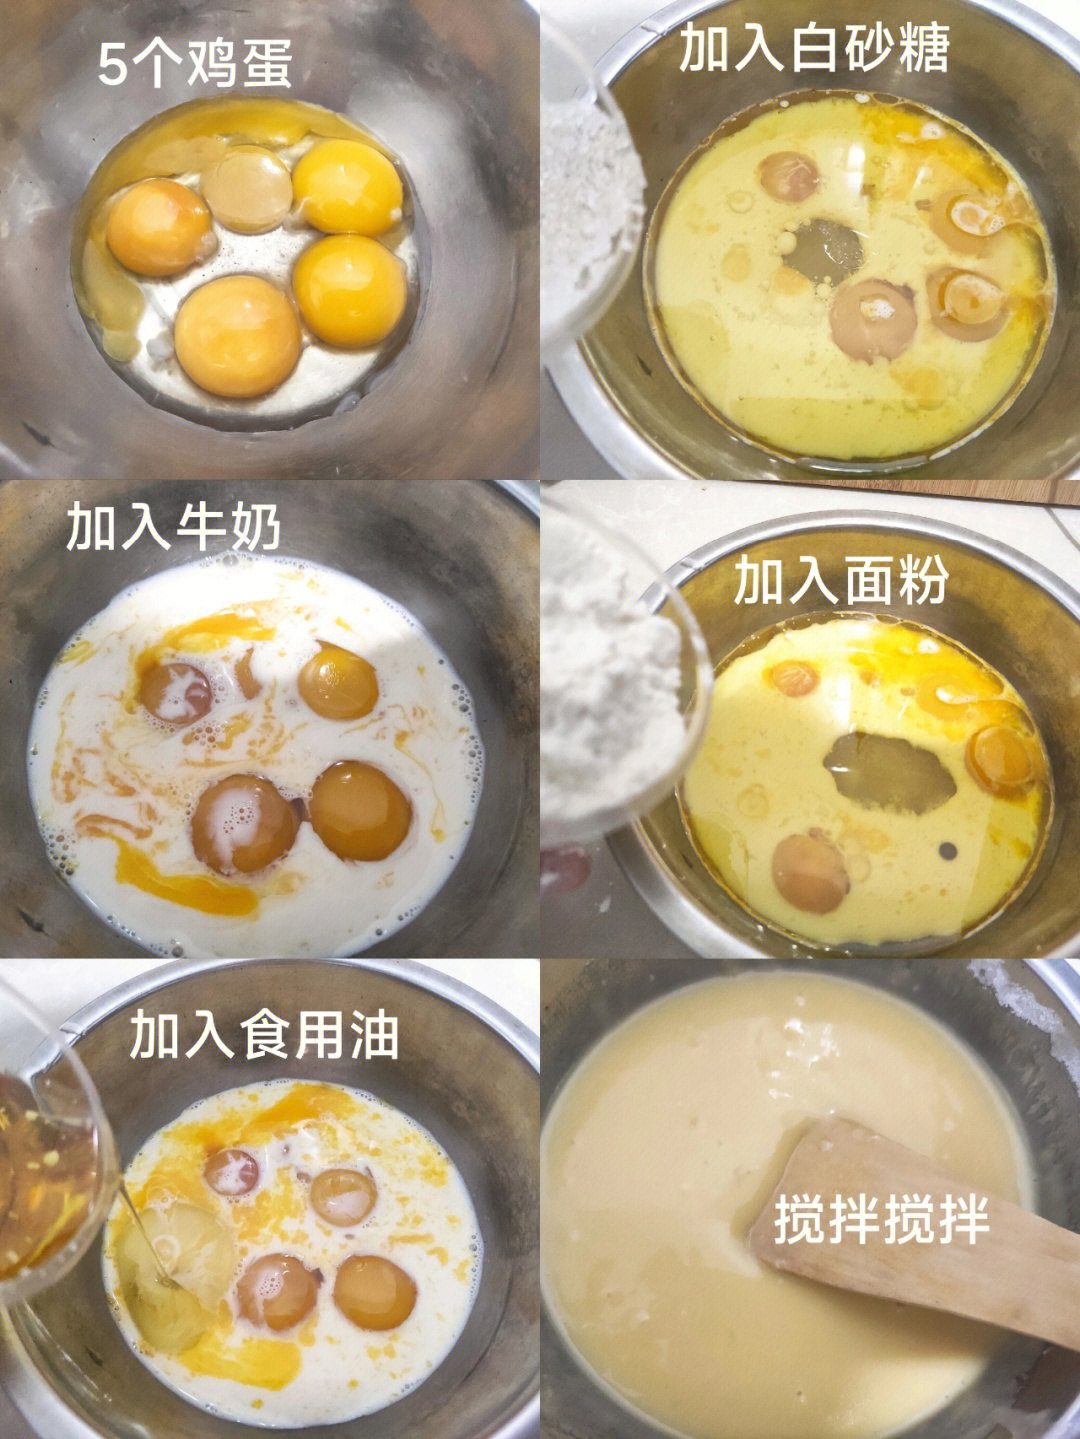 电饭煲蛋糕做法90:①准备五个鸡蛋 蛋清蛋黄分离②在蛋黄中加入半